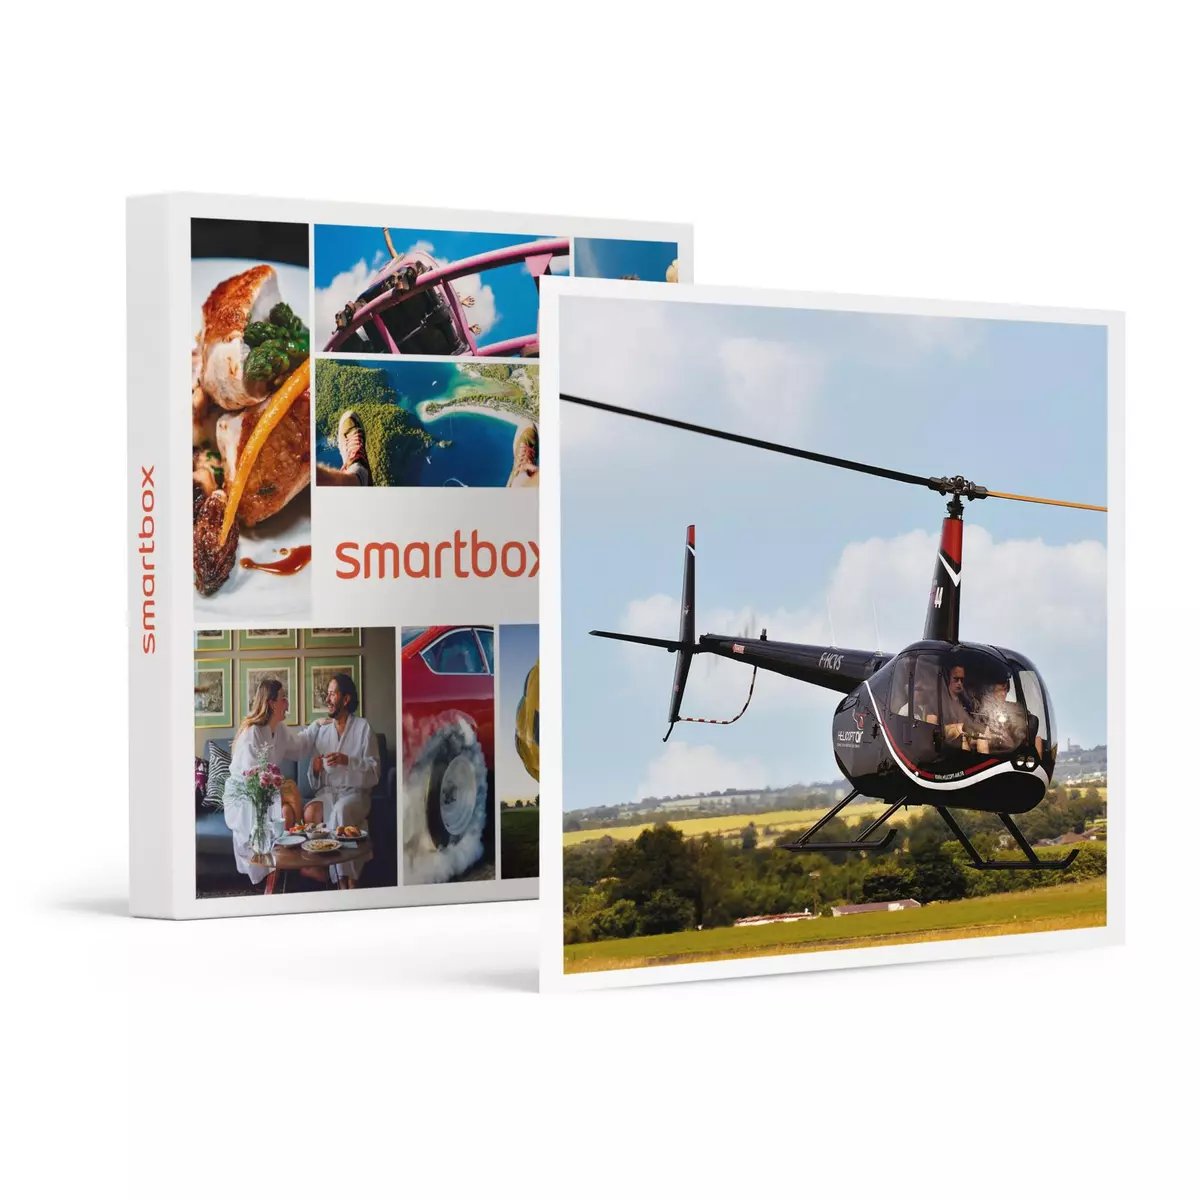 Smartbox Vol en hélicoptère de 15 min pour 2 personnes près de Nantes - Coffret Cadeau Sport & Aventure